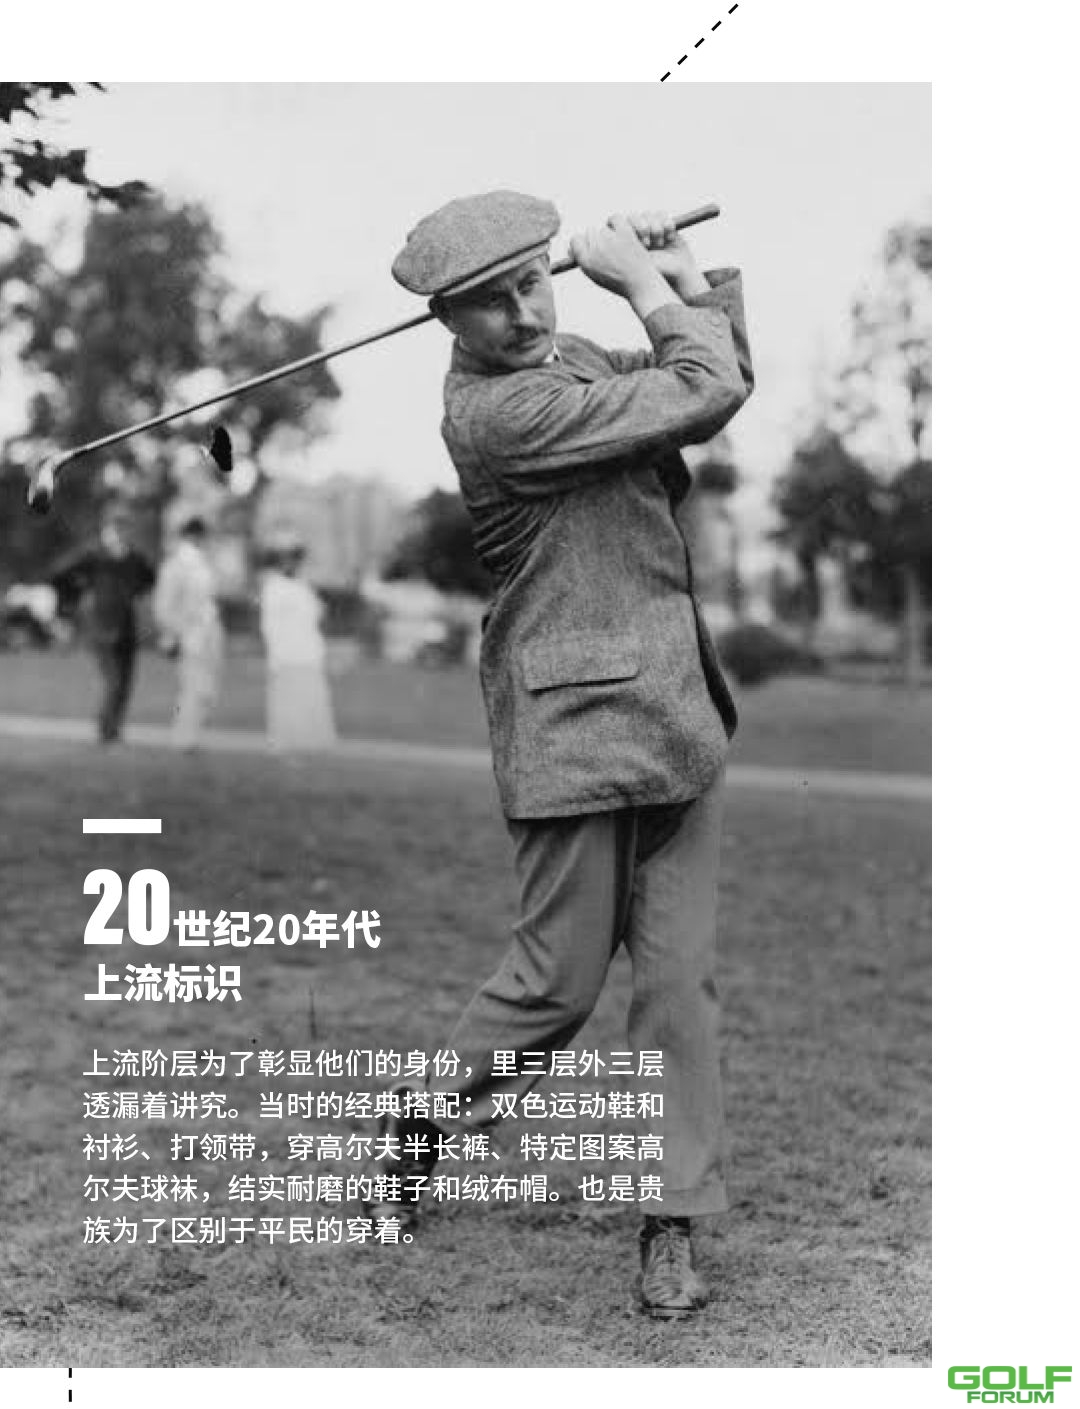 高尔夫小课堂|高球服饰的前世今生